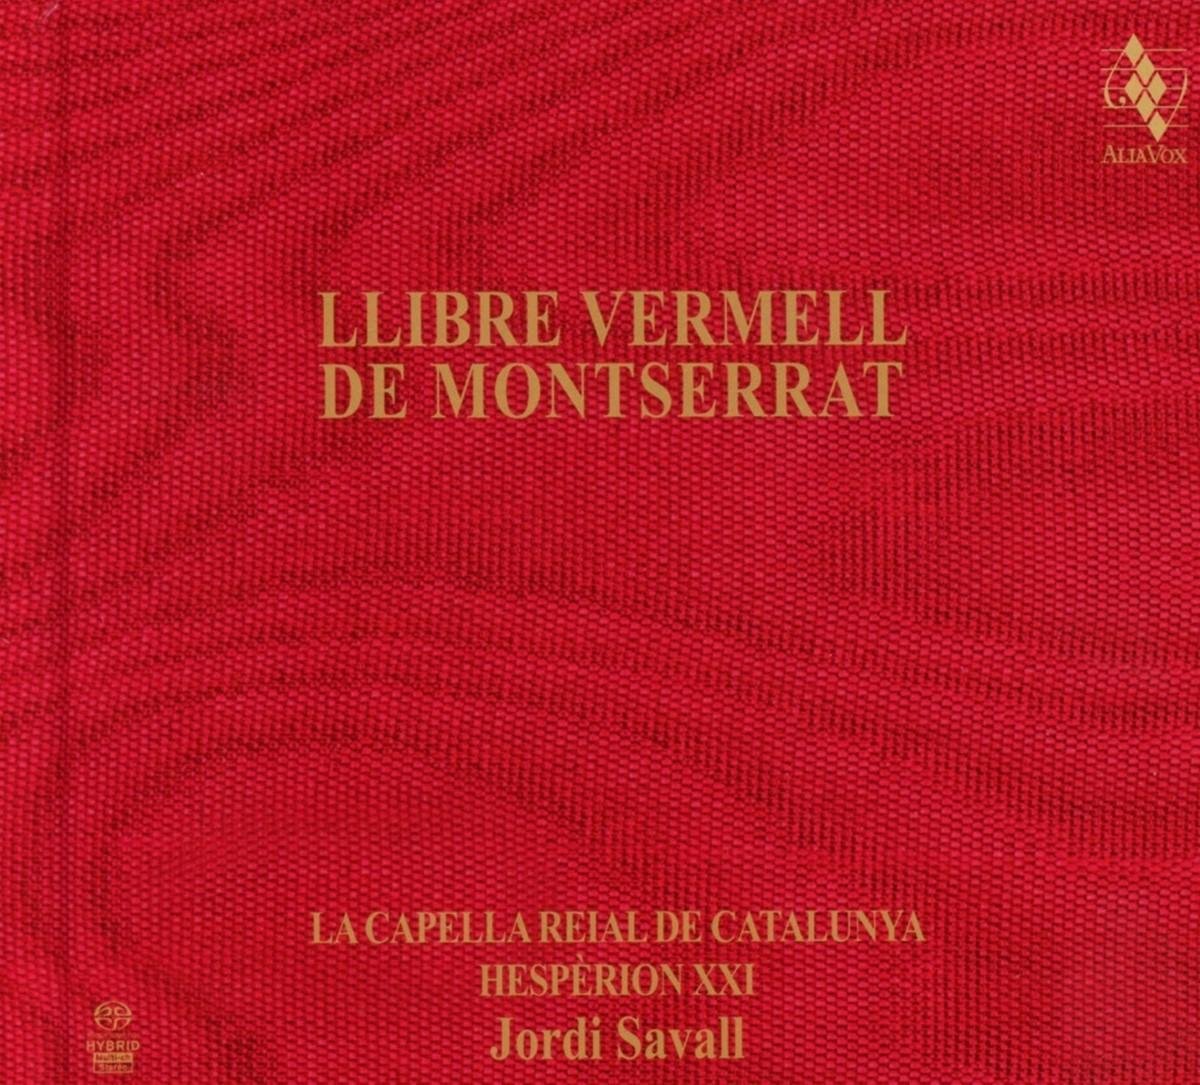 Hespèrion XXI en La Capella Reial de Catalunya - Libre Vermell De Montserrat (2013 R (CD) - Hespèrion XXI en La Capella Reial de Catalunya